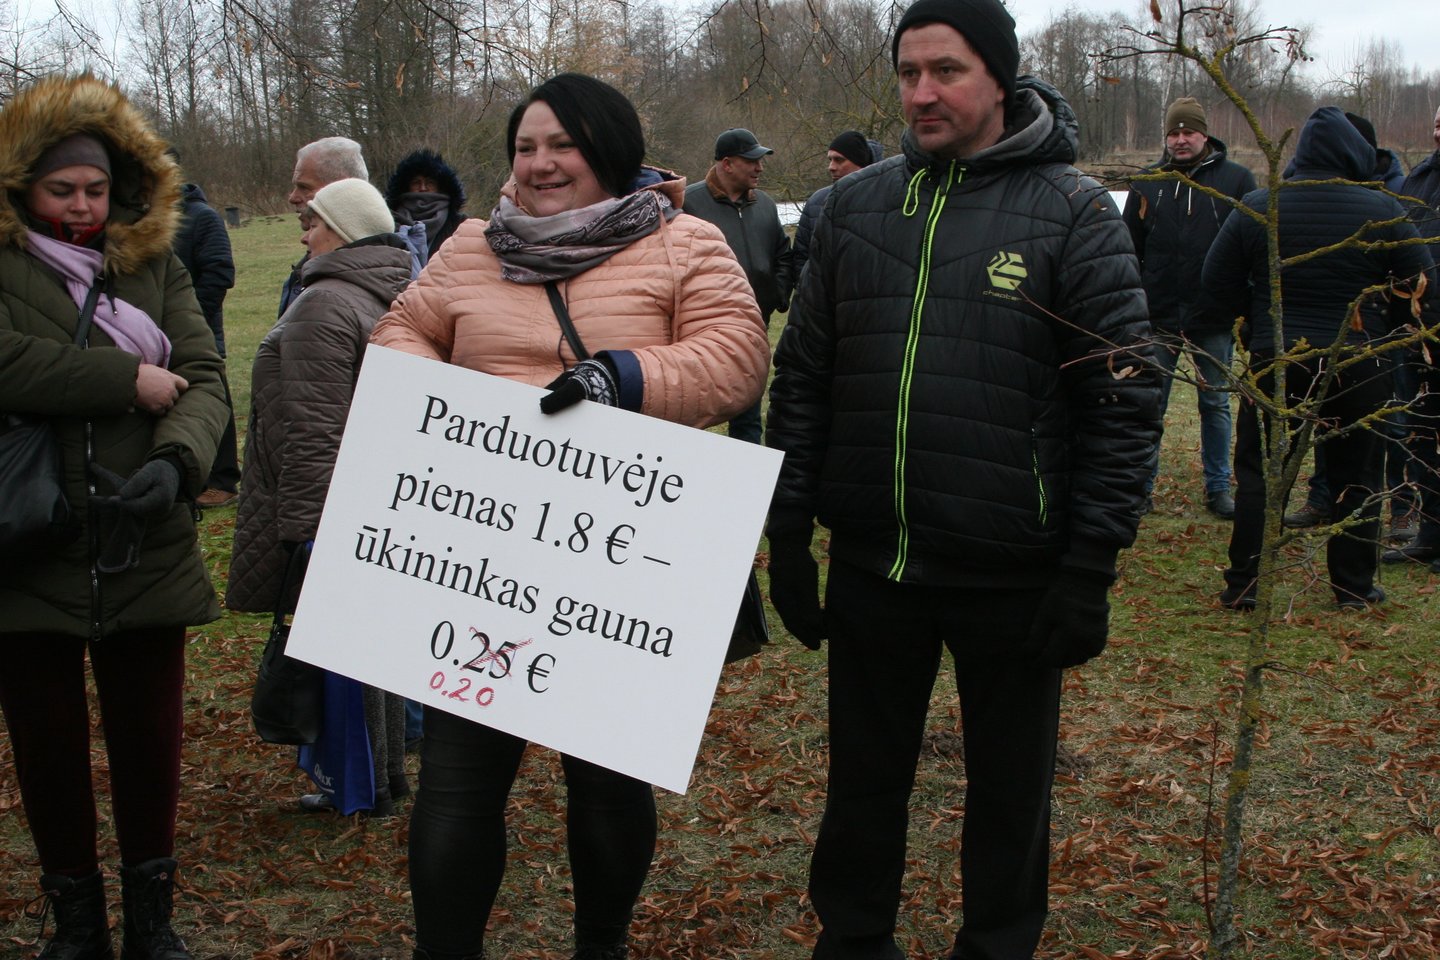 Pieno gamintojai jau keletą savaičių protestuoja pildami pieną į laukus arba nemokamai dalindami jį gyventojams.<br>L.Juodzevičienės nuotr.